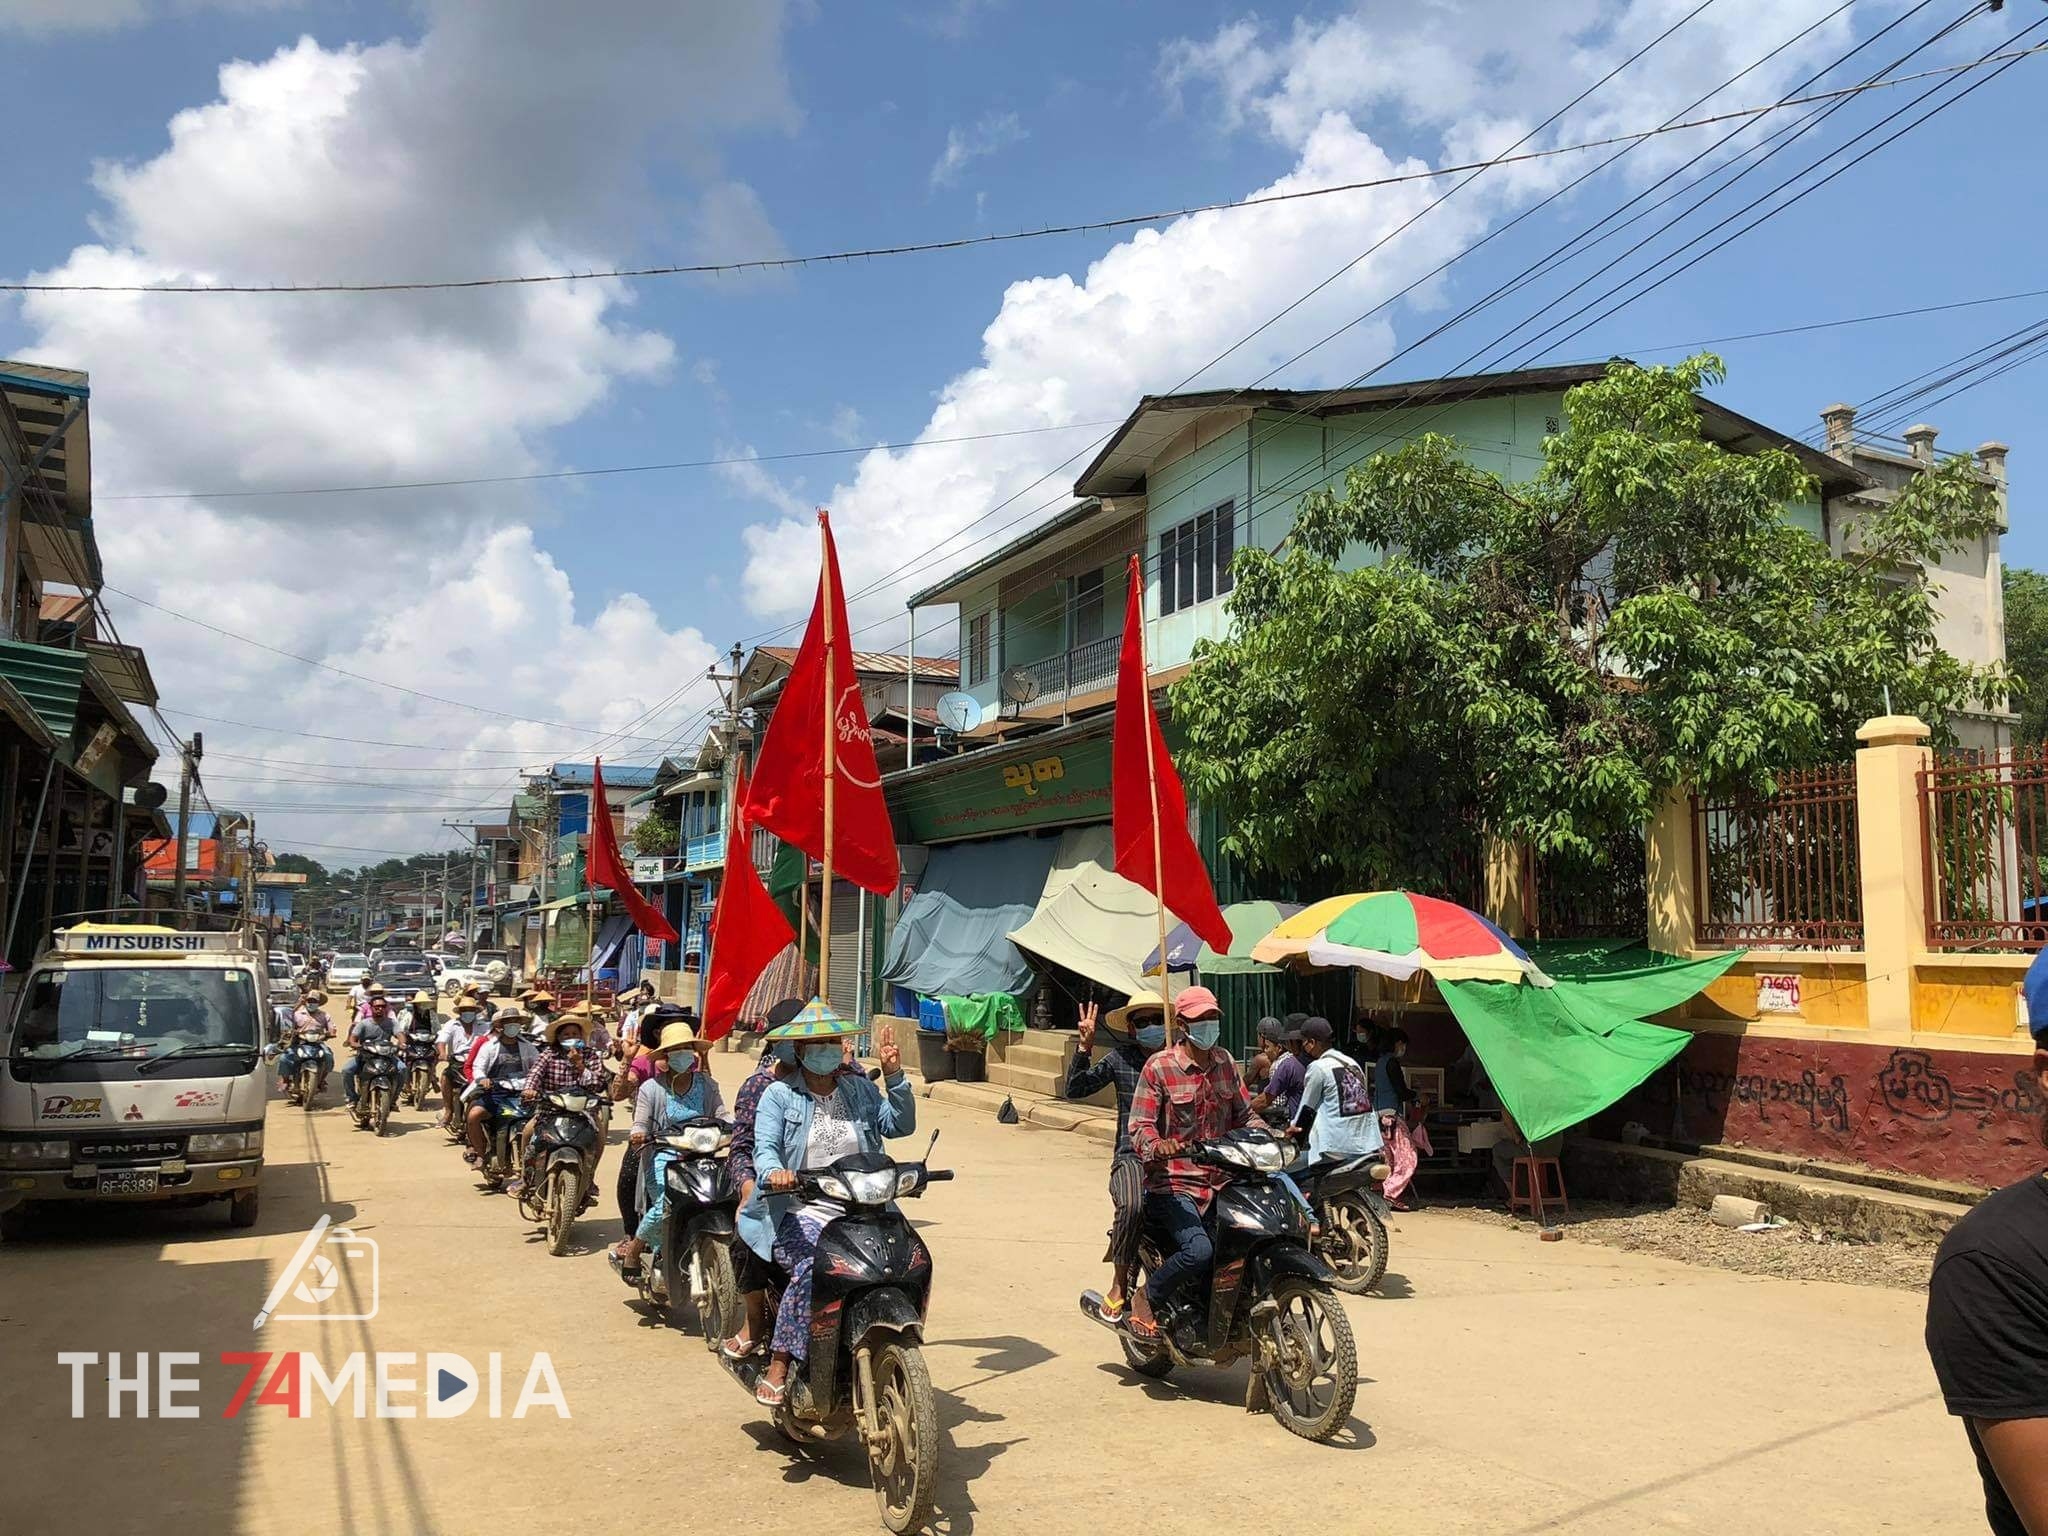 ဖားကန်မြို့နယ်၊ ဆိပ်မူ(ဆိုင်းတောင်) ကျေးရွာတွင် အာဏာရှင်ဆန့်ကျင်ရေးဆိုင်ကယ်သပိတ် ဆက်လက်ပြုလုပ်